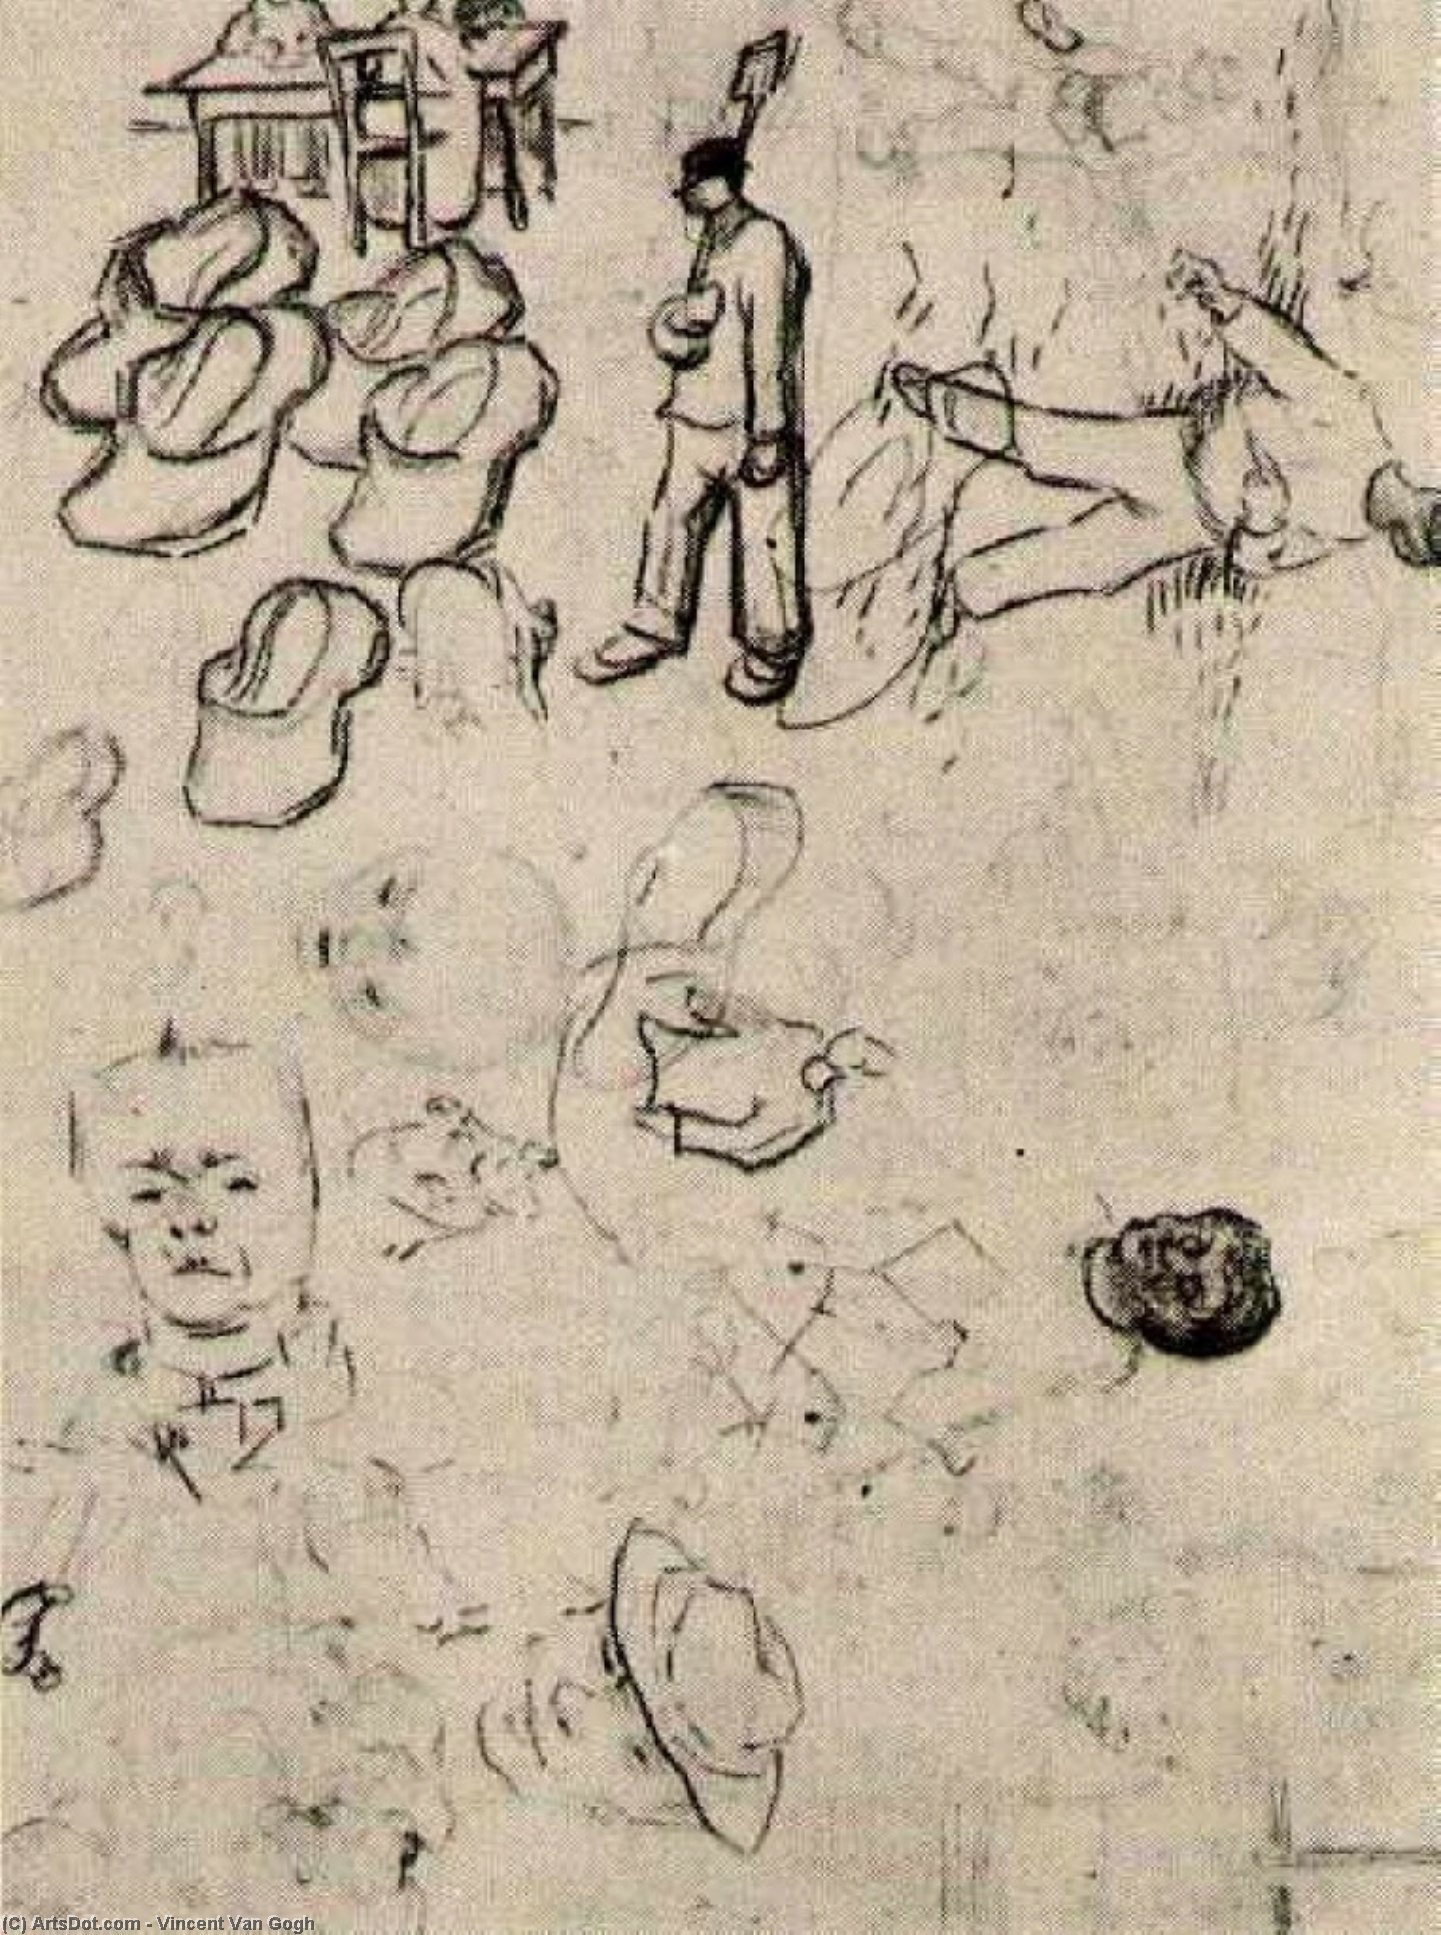 WikiOO.org - Enciklopedija likovnih umjetnosti - Slikarstvo, umjetnička djela Vincent Van Gogh - Sheet with Figures at a Table, a Sower, Clogs, etc